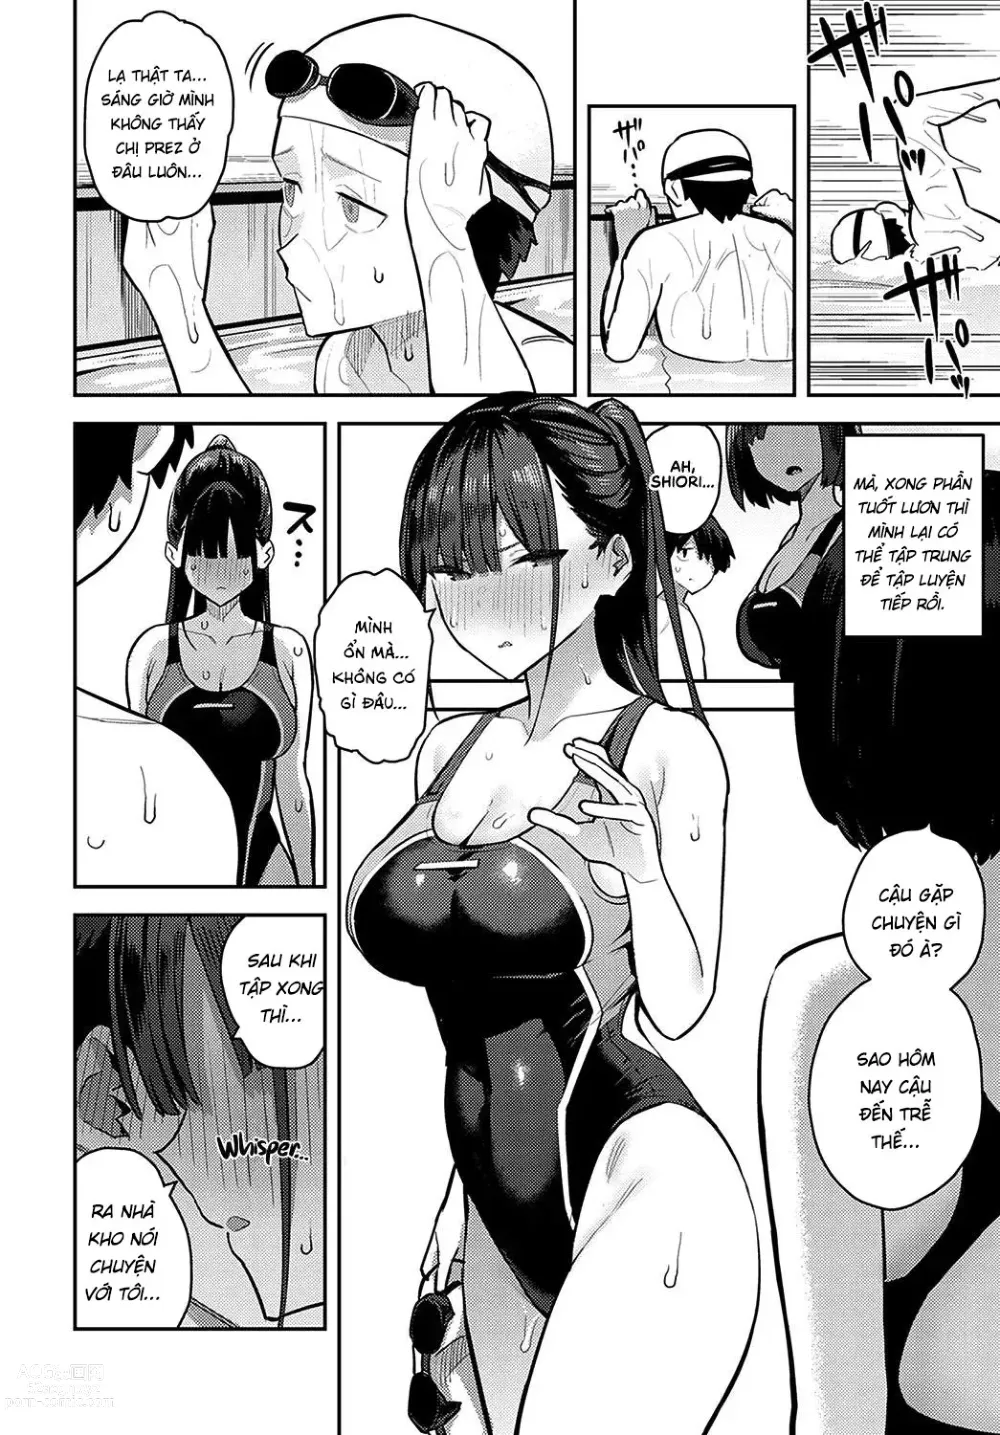 Page 22 of manga Sóc lọ cùng với senpai trong clb bơi lội